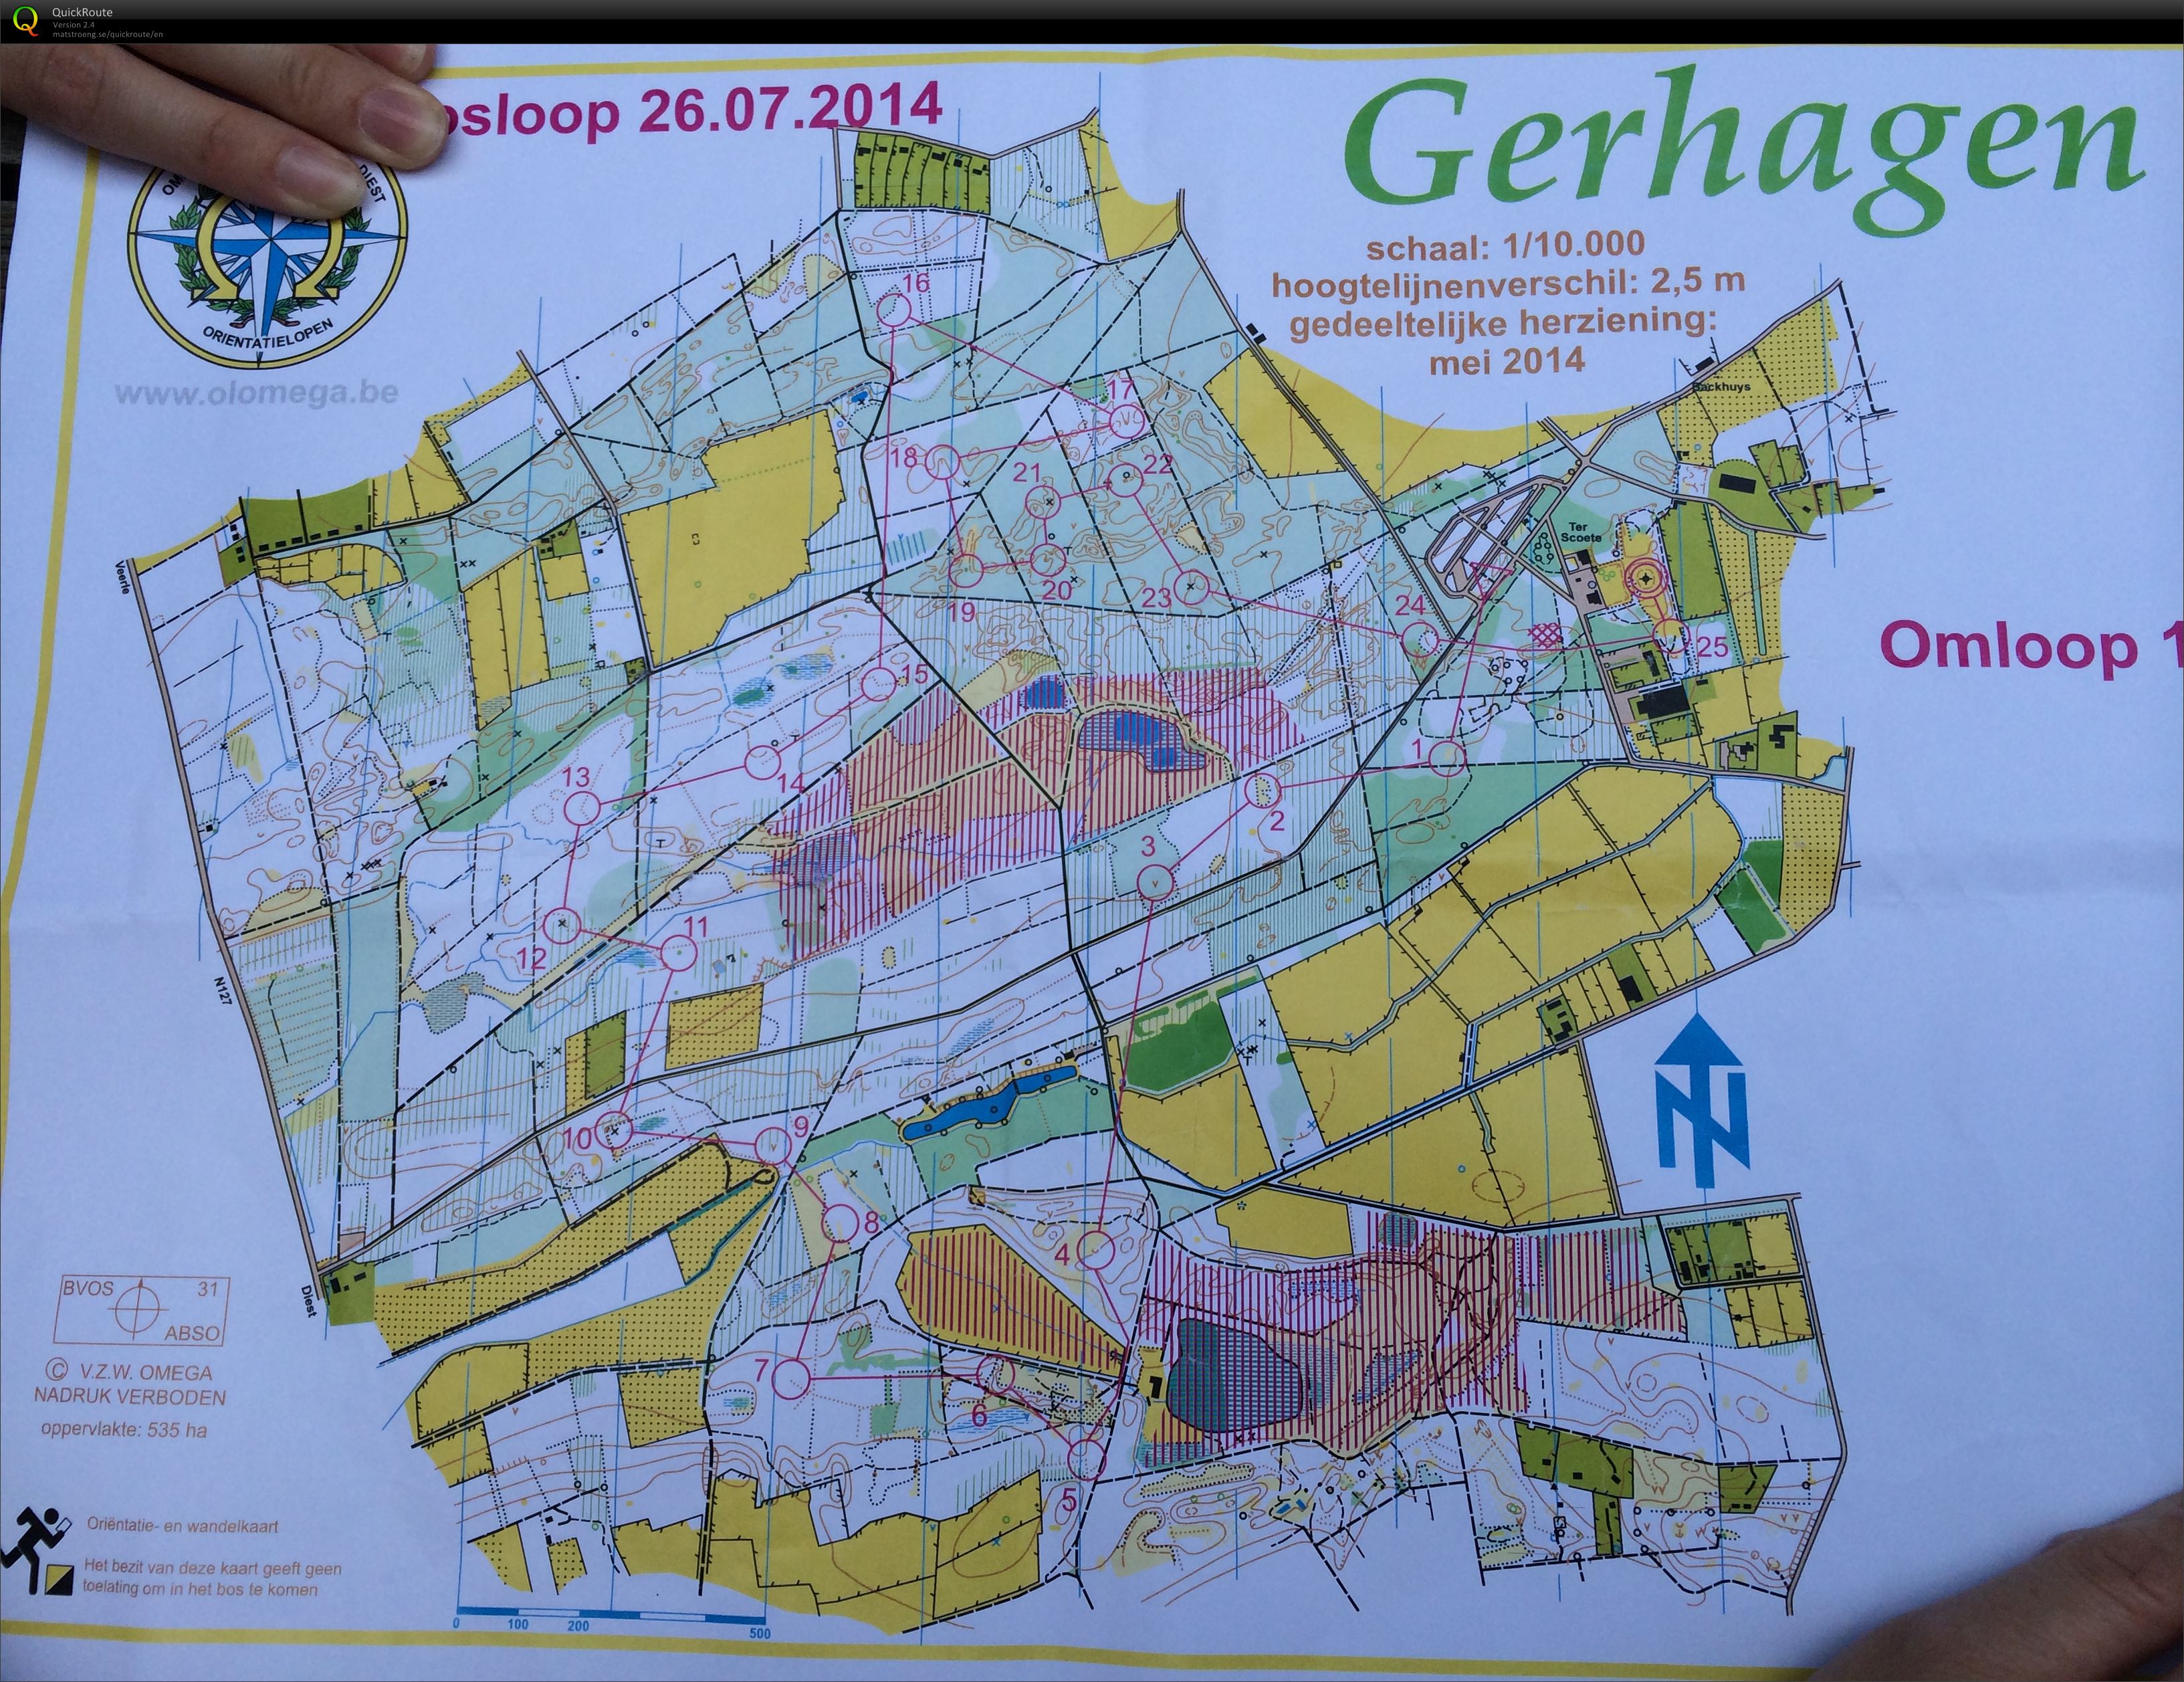 Regionale Gerhagen (2014-07-26)